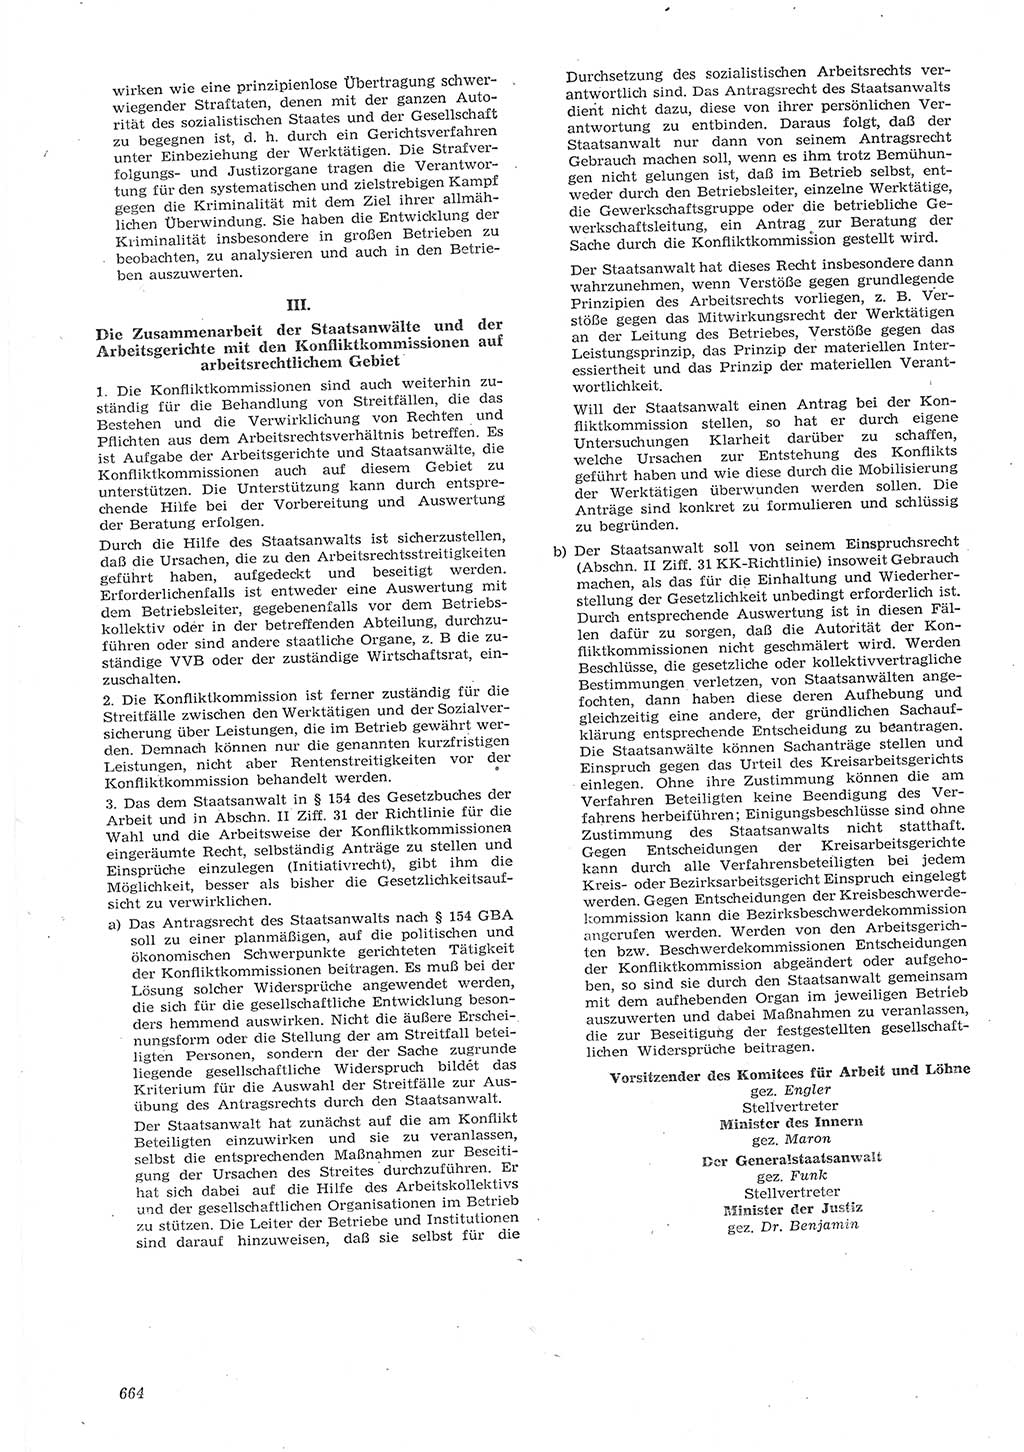 Neue Justiz (NJ), Zeitschrift für Recht und Rechtswissenschaft [Deutsche Demokratische Republik (DDR)], 15. Jahrgang 1961, Seite 664 (NJ DDR 1961, S. 664)